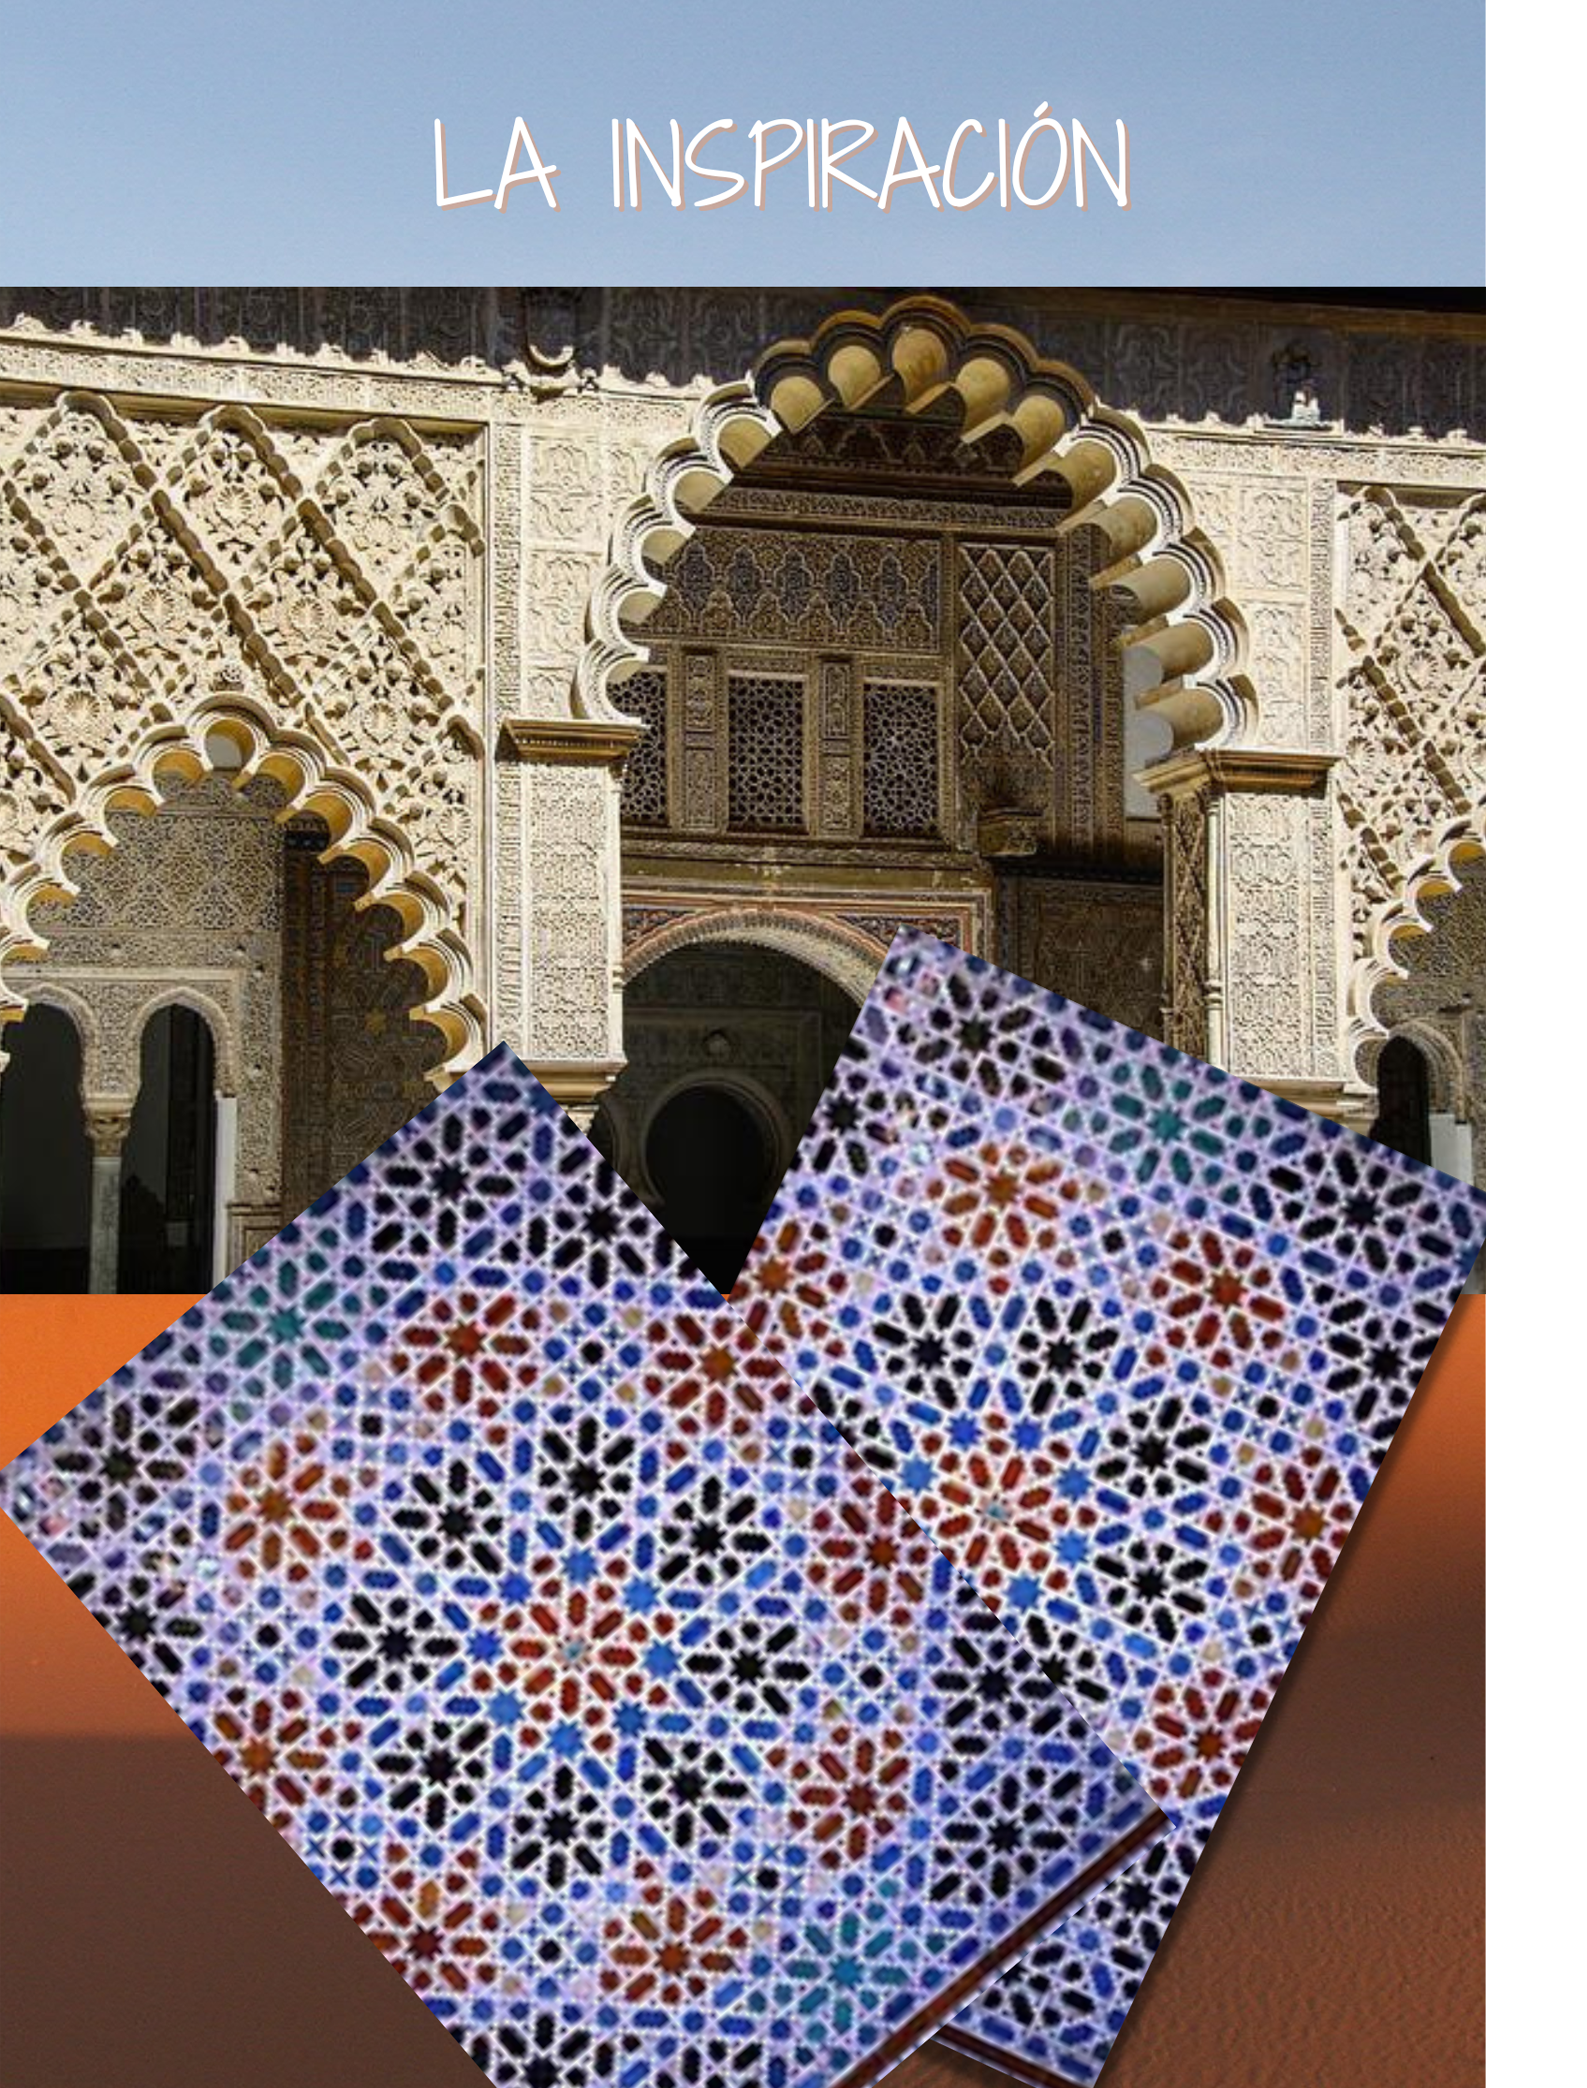 La inspiración 1.Detalle de sala del Alcazar de Sevilla. Arcos estilo mudejar. 2. Azulejo estilo arabesco.